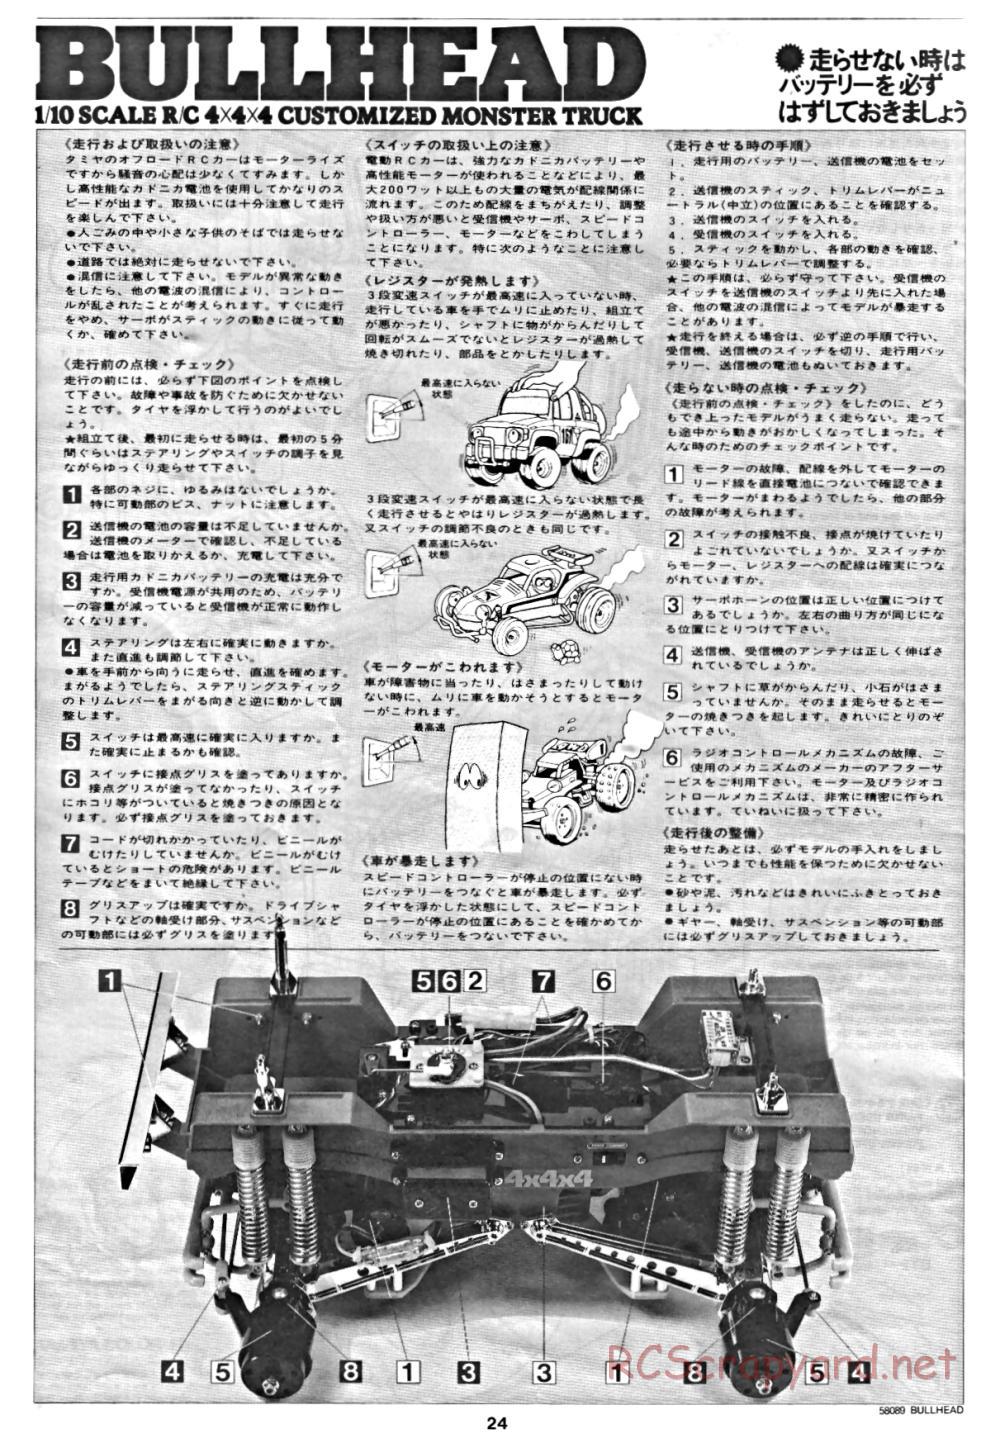 Tamiya - Bullhead - 58089 - Manual - Page 24